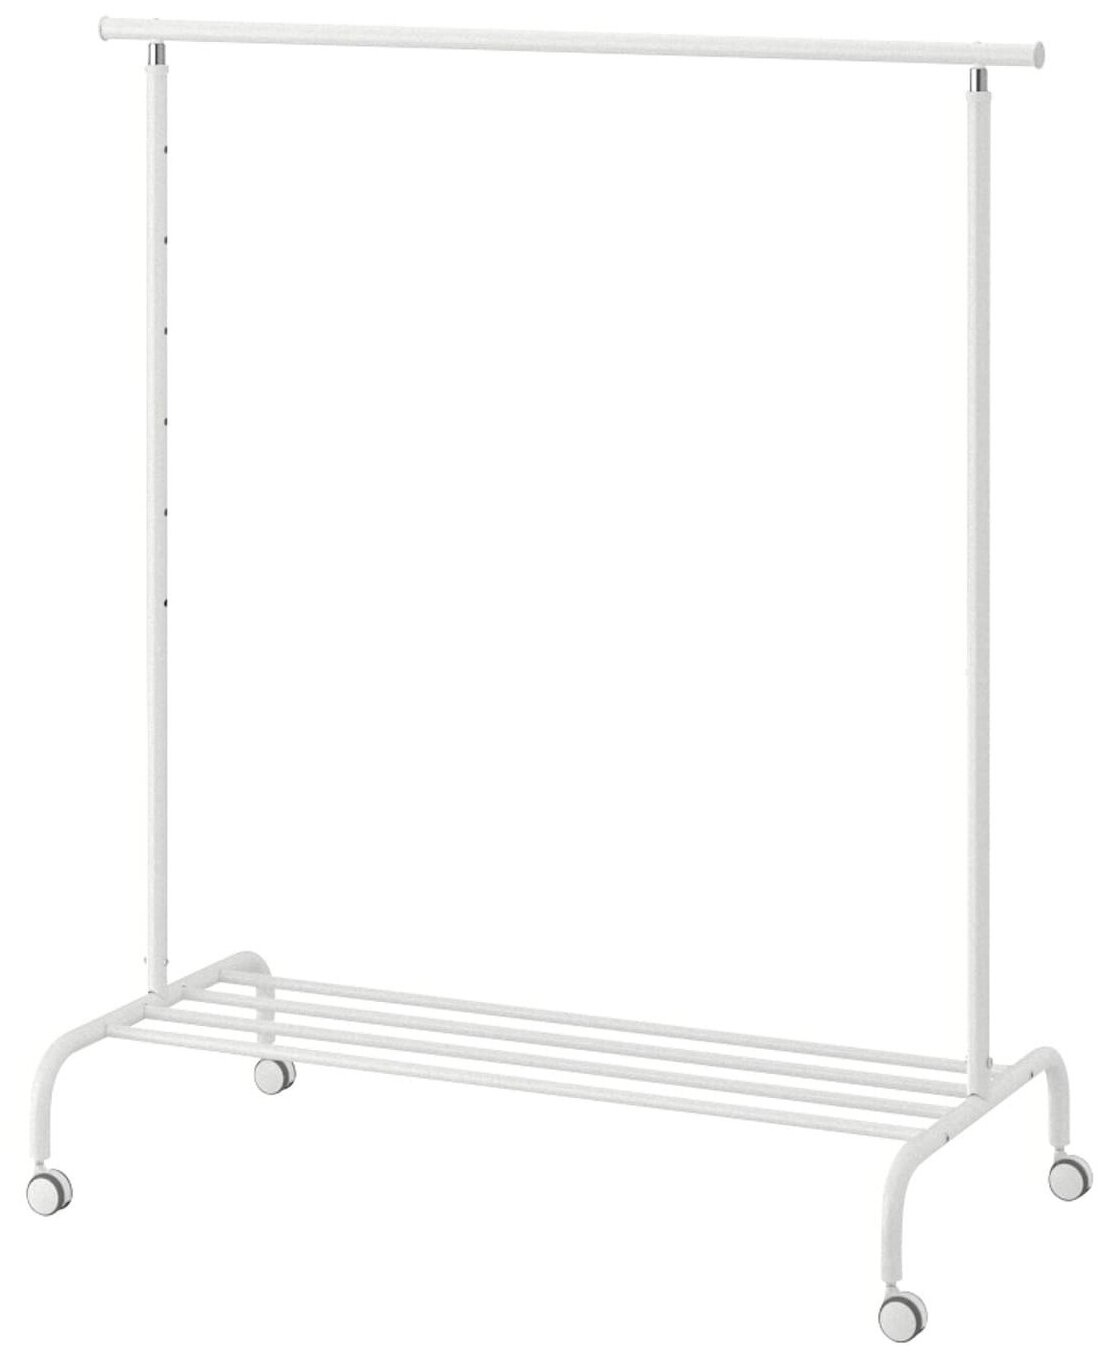 Напольная вешалка Ригга, цвет белый Ikea 2376257 .